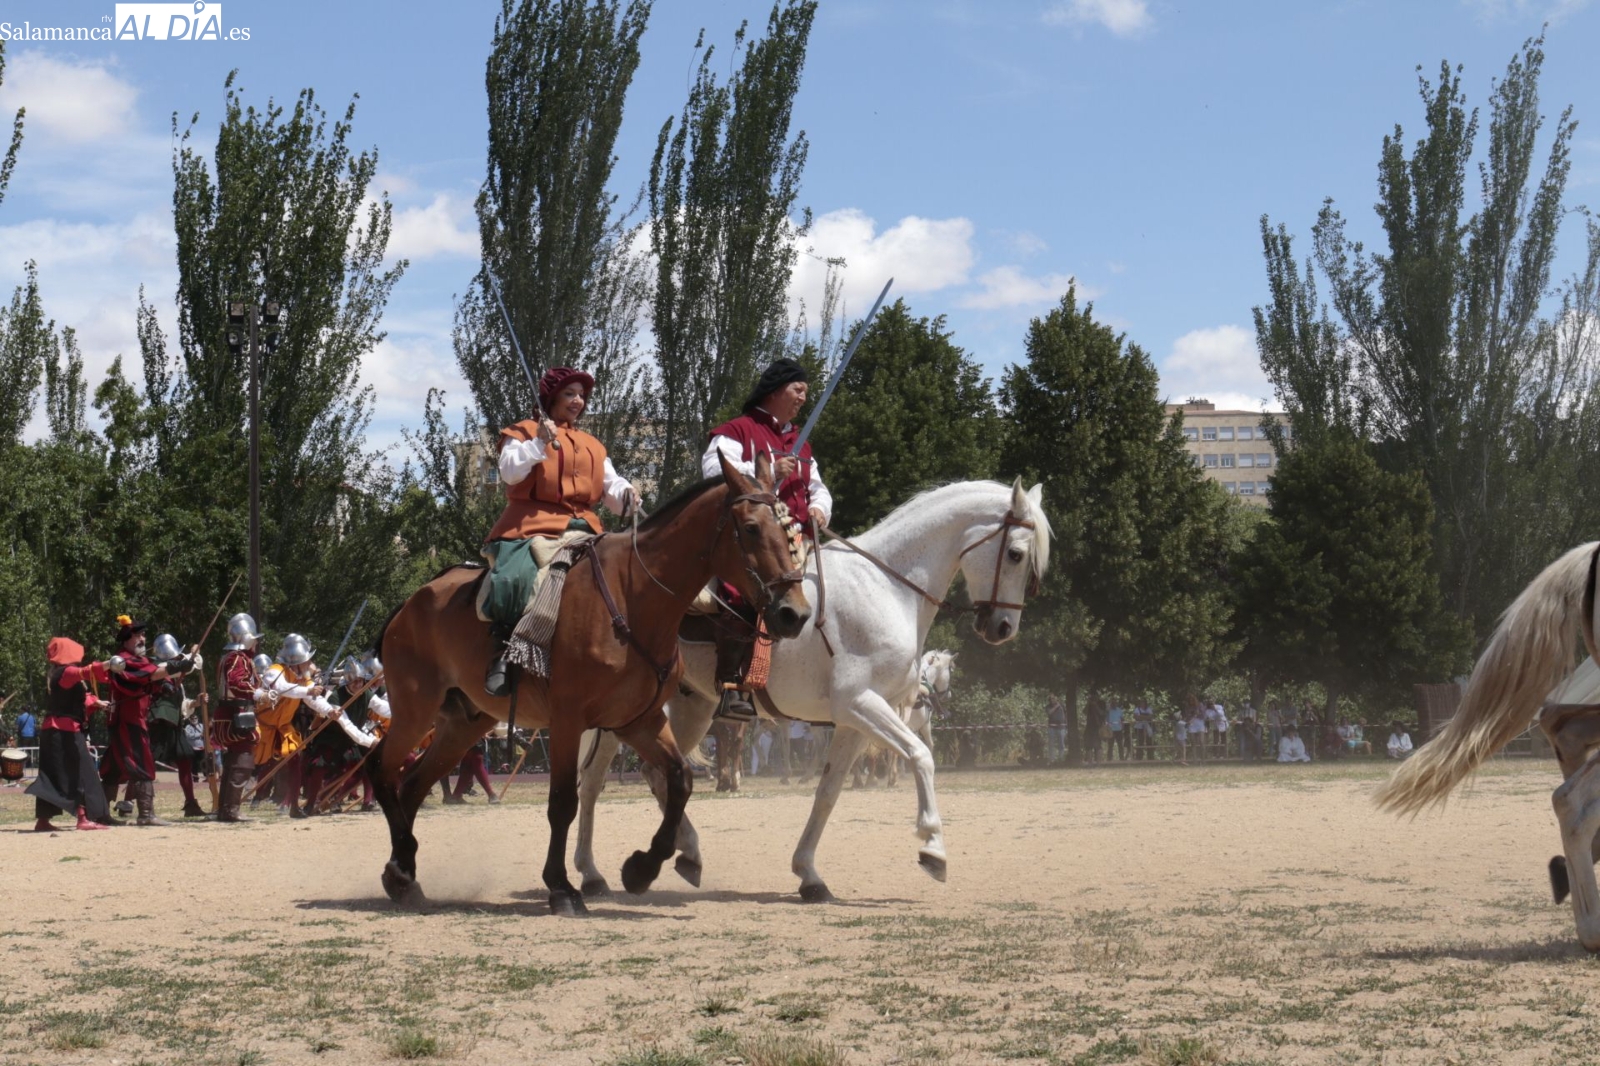 Recreación histórica de una batalla de los Tercios de Flandes en el Festival del Siglo de Oro en Salamanca - David Sañudo